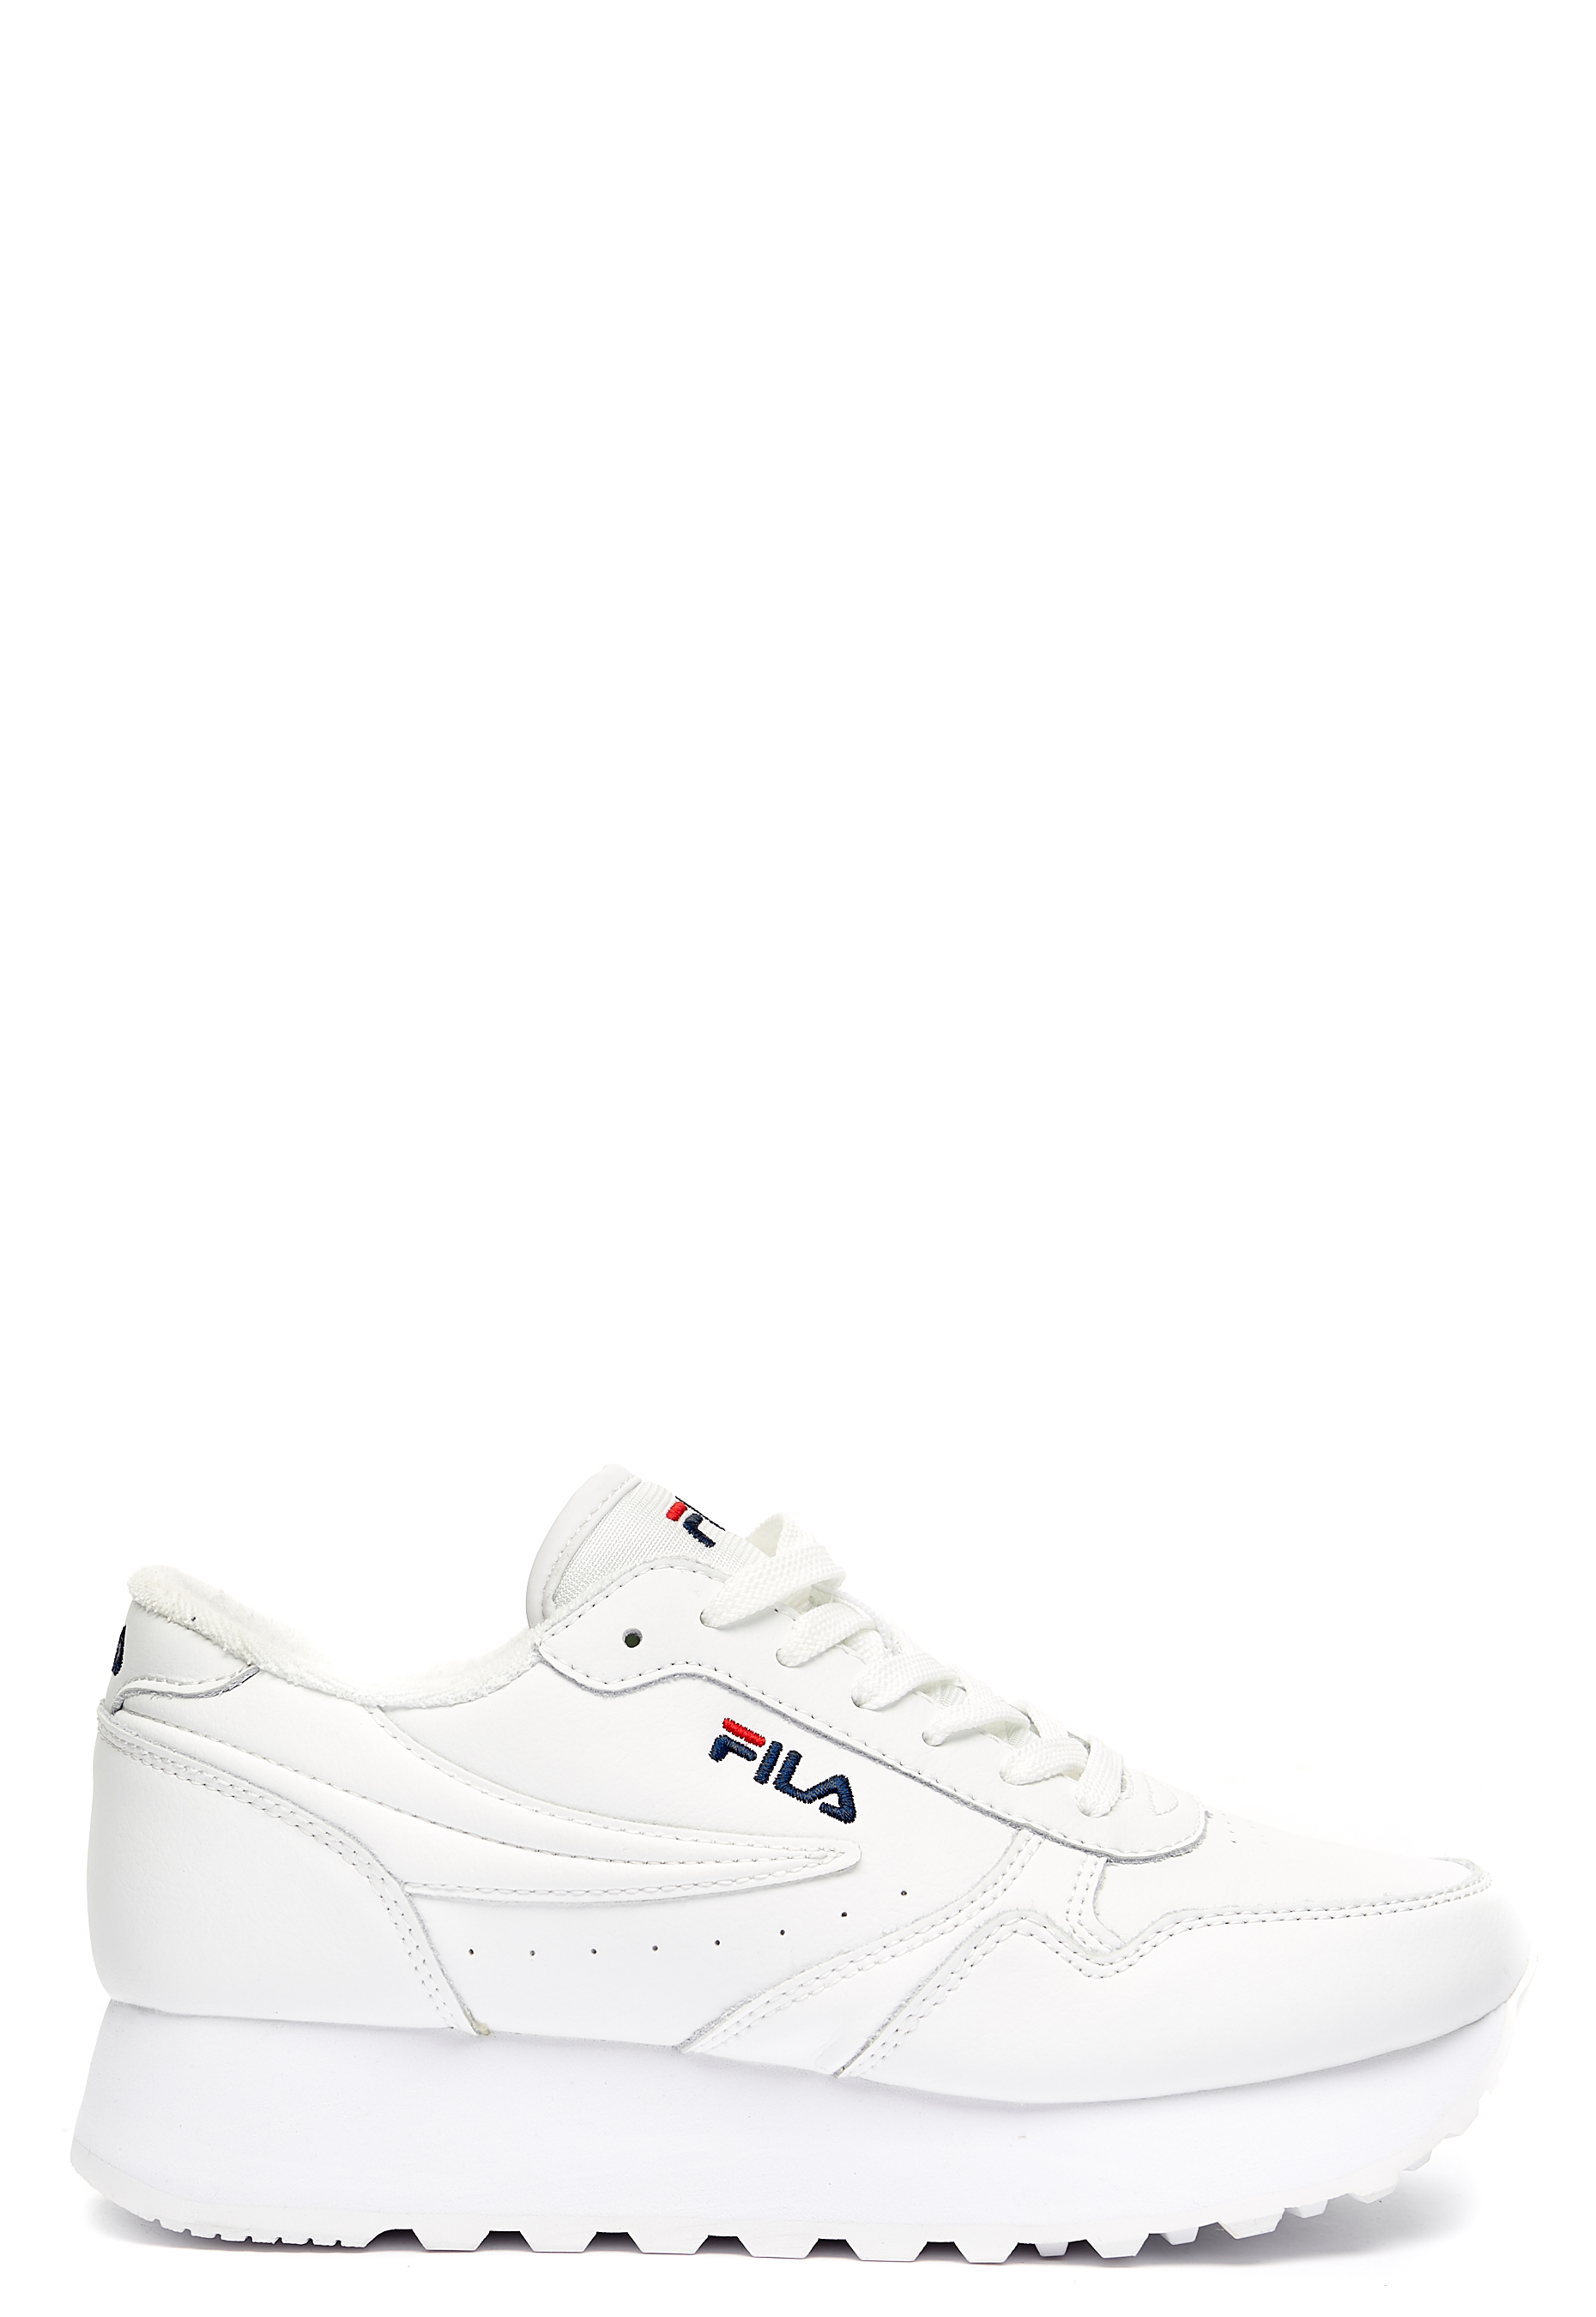 FILA Orbit Zeppa L Shoes White - Bubbleroom